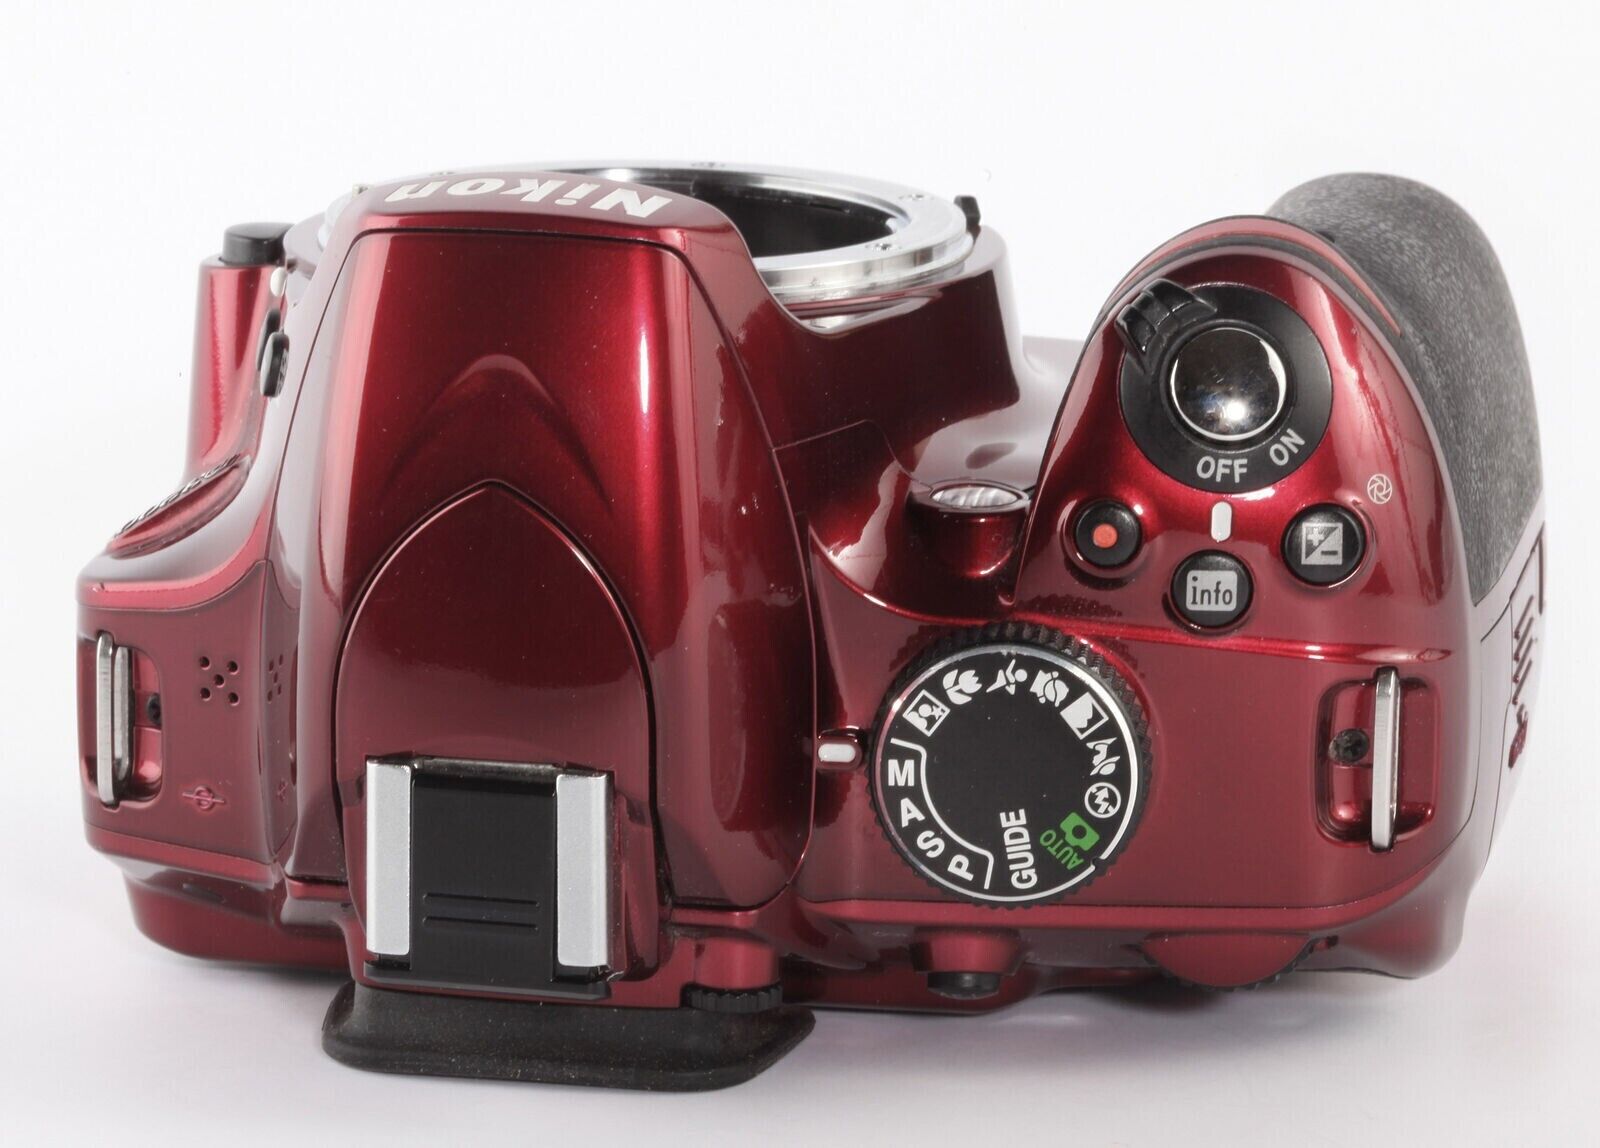 Nikon D3200 24.2 MP Digital SLR Camera - Red (Kit w/ AF-S DX VR 